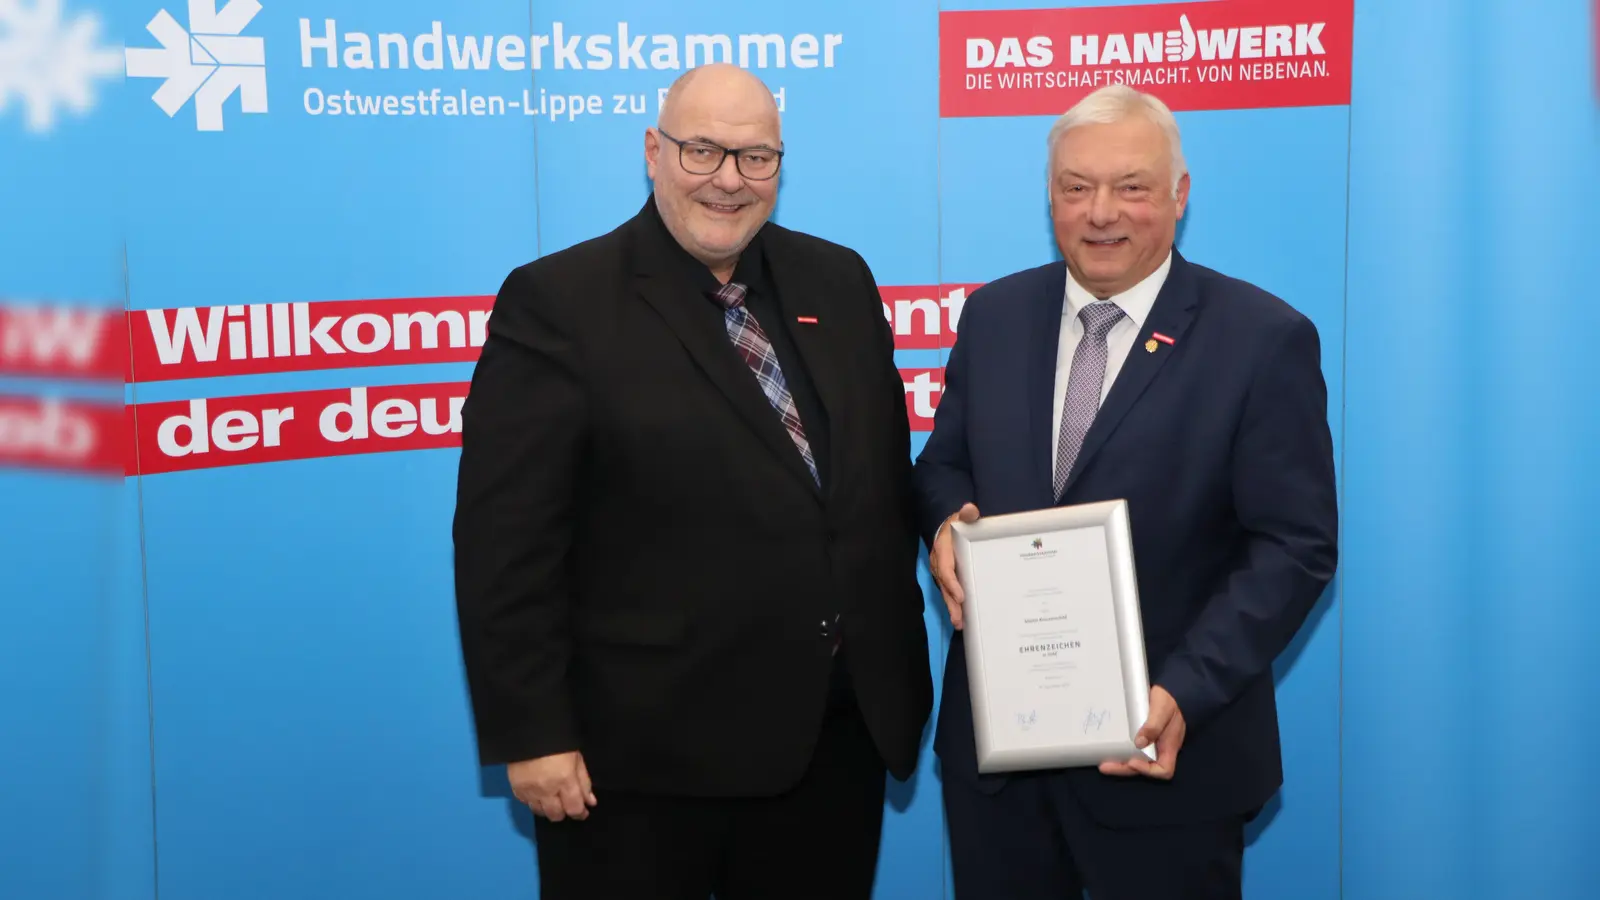 V.l.: Kammerpräsident Peter Eul und Martin Knorrenschild. (Foto: Thomas F. Starke / Handwerkskammer Ostwestfalen-Lippe zu Bielefeld)